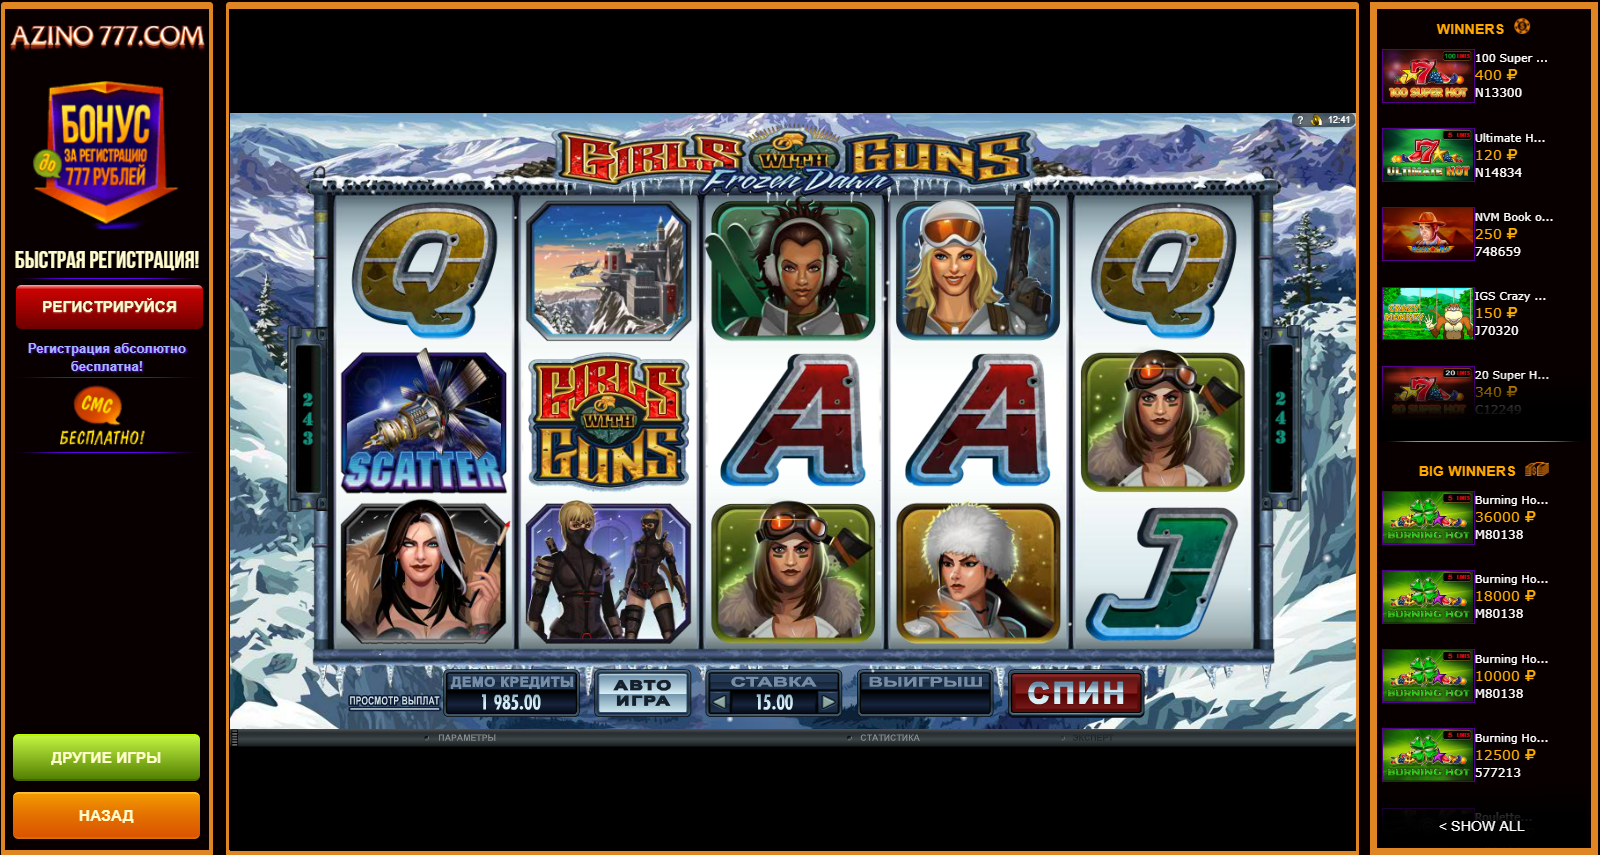 Игровые автоматы демо версии без регистрации slot v casino зеркало 1win bukmeker net 1вин 200 0 0